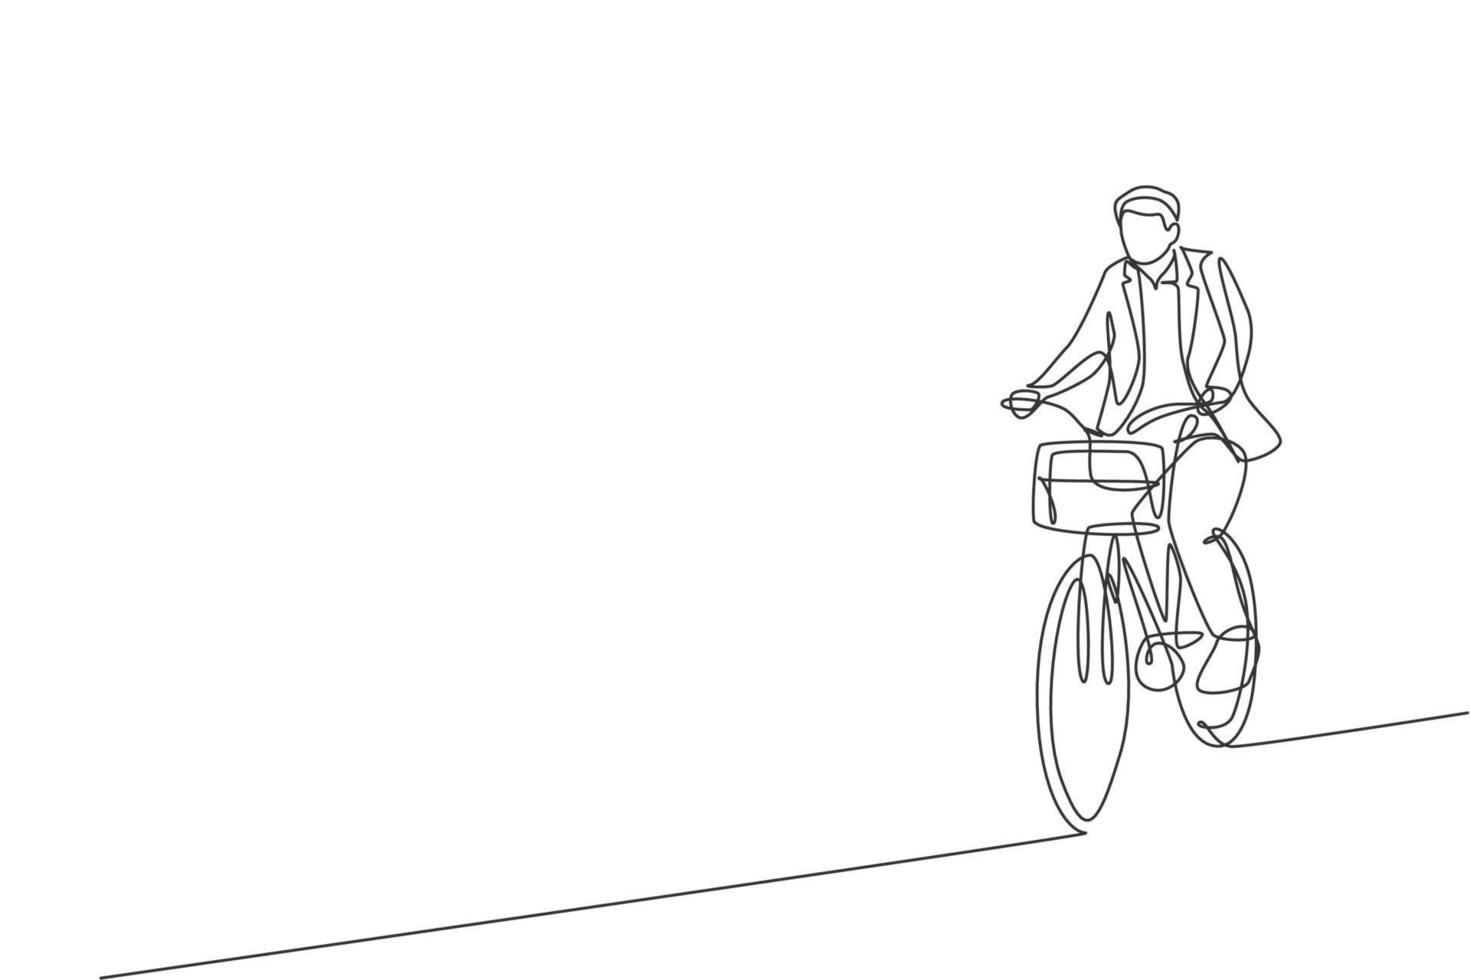 Eine einzige Strichzeichnung eines jungen, glücklichen, professionellen Startup-Mitarbeiters, der mit dem Fahrrad zur Coworking Space-Vektorillustration fährt. gesundes Pendler-Lifestyle-Konzept. modernes Design mit durchgehender Linie vektor